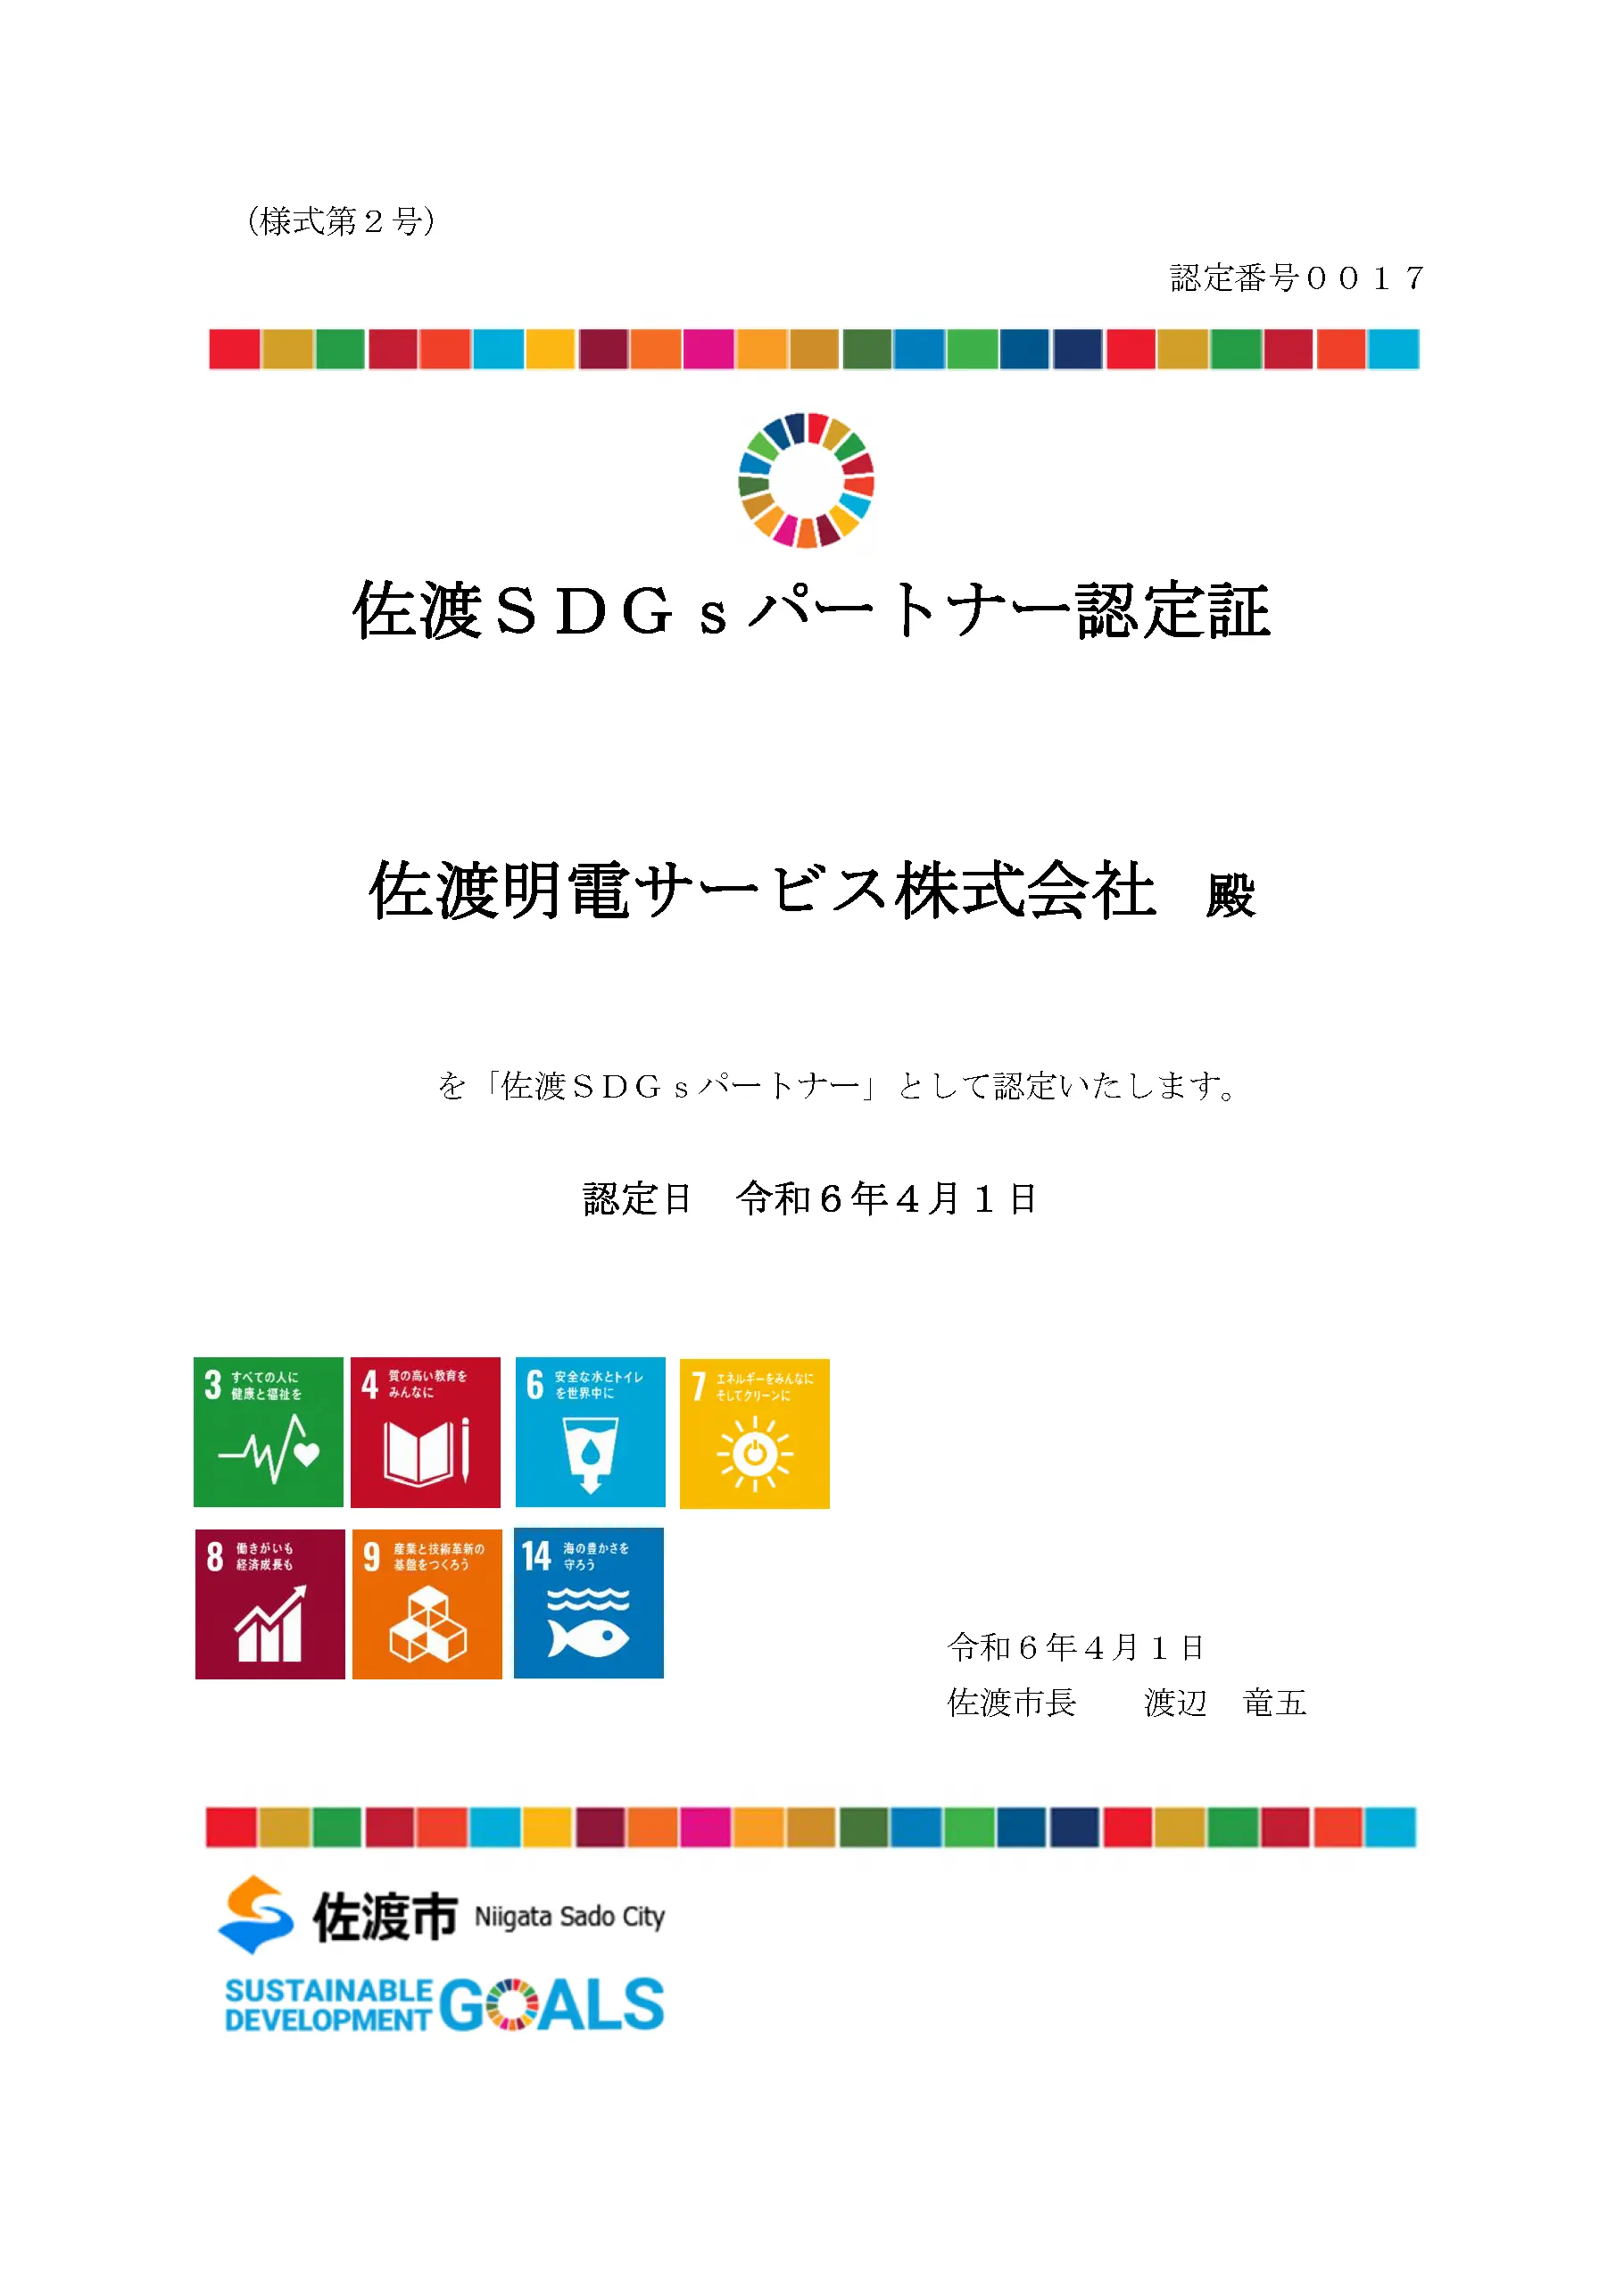 佐渡SDGsパートナー認定証 佐渡明電サービス株式会社　殿 を「佐渡SDGsパートナー」として認定いたします。